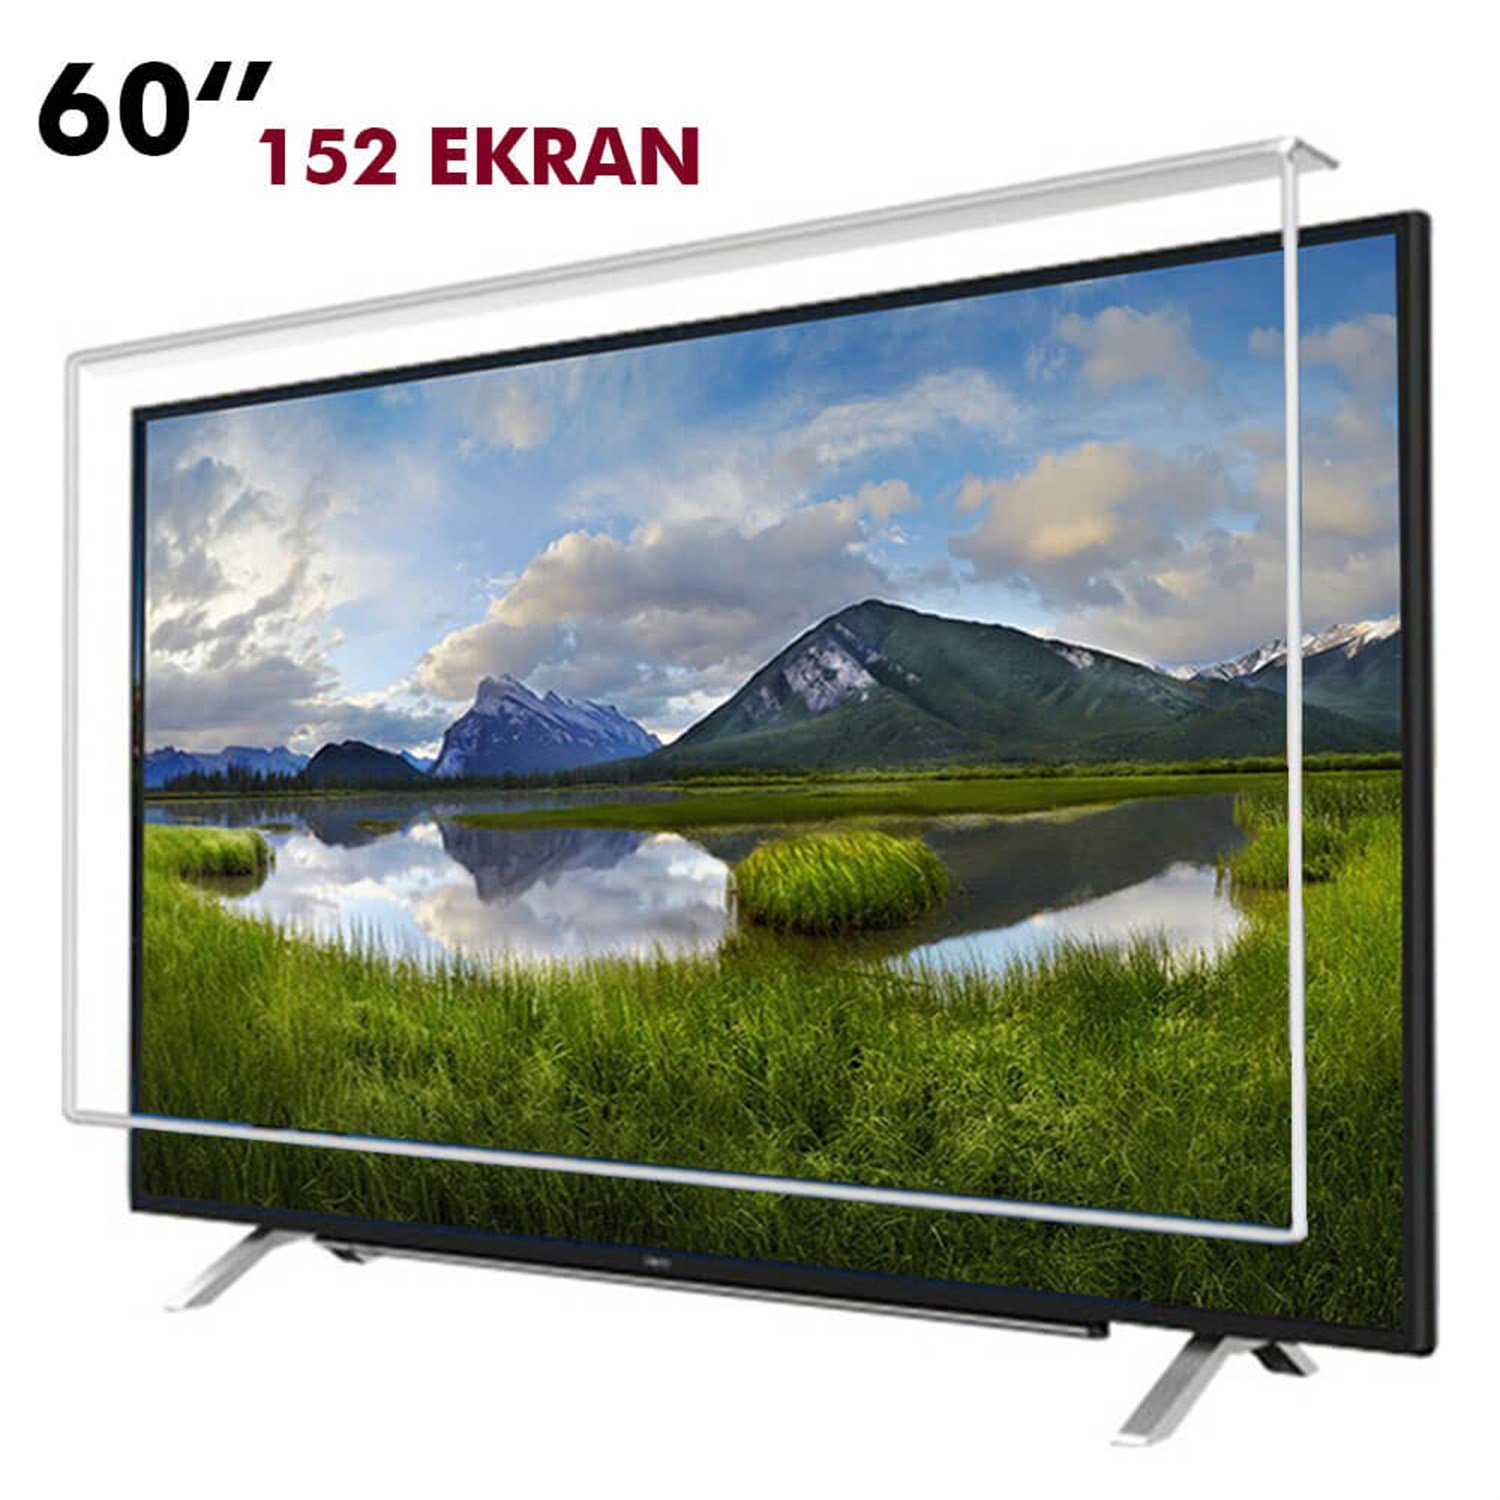 Tv Ekran Koruyucu 152 Ekran(60” inch) | Okularenkkat.com